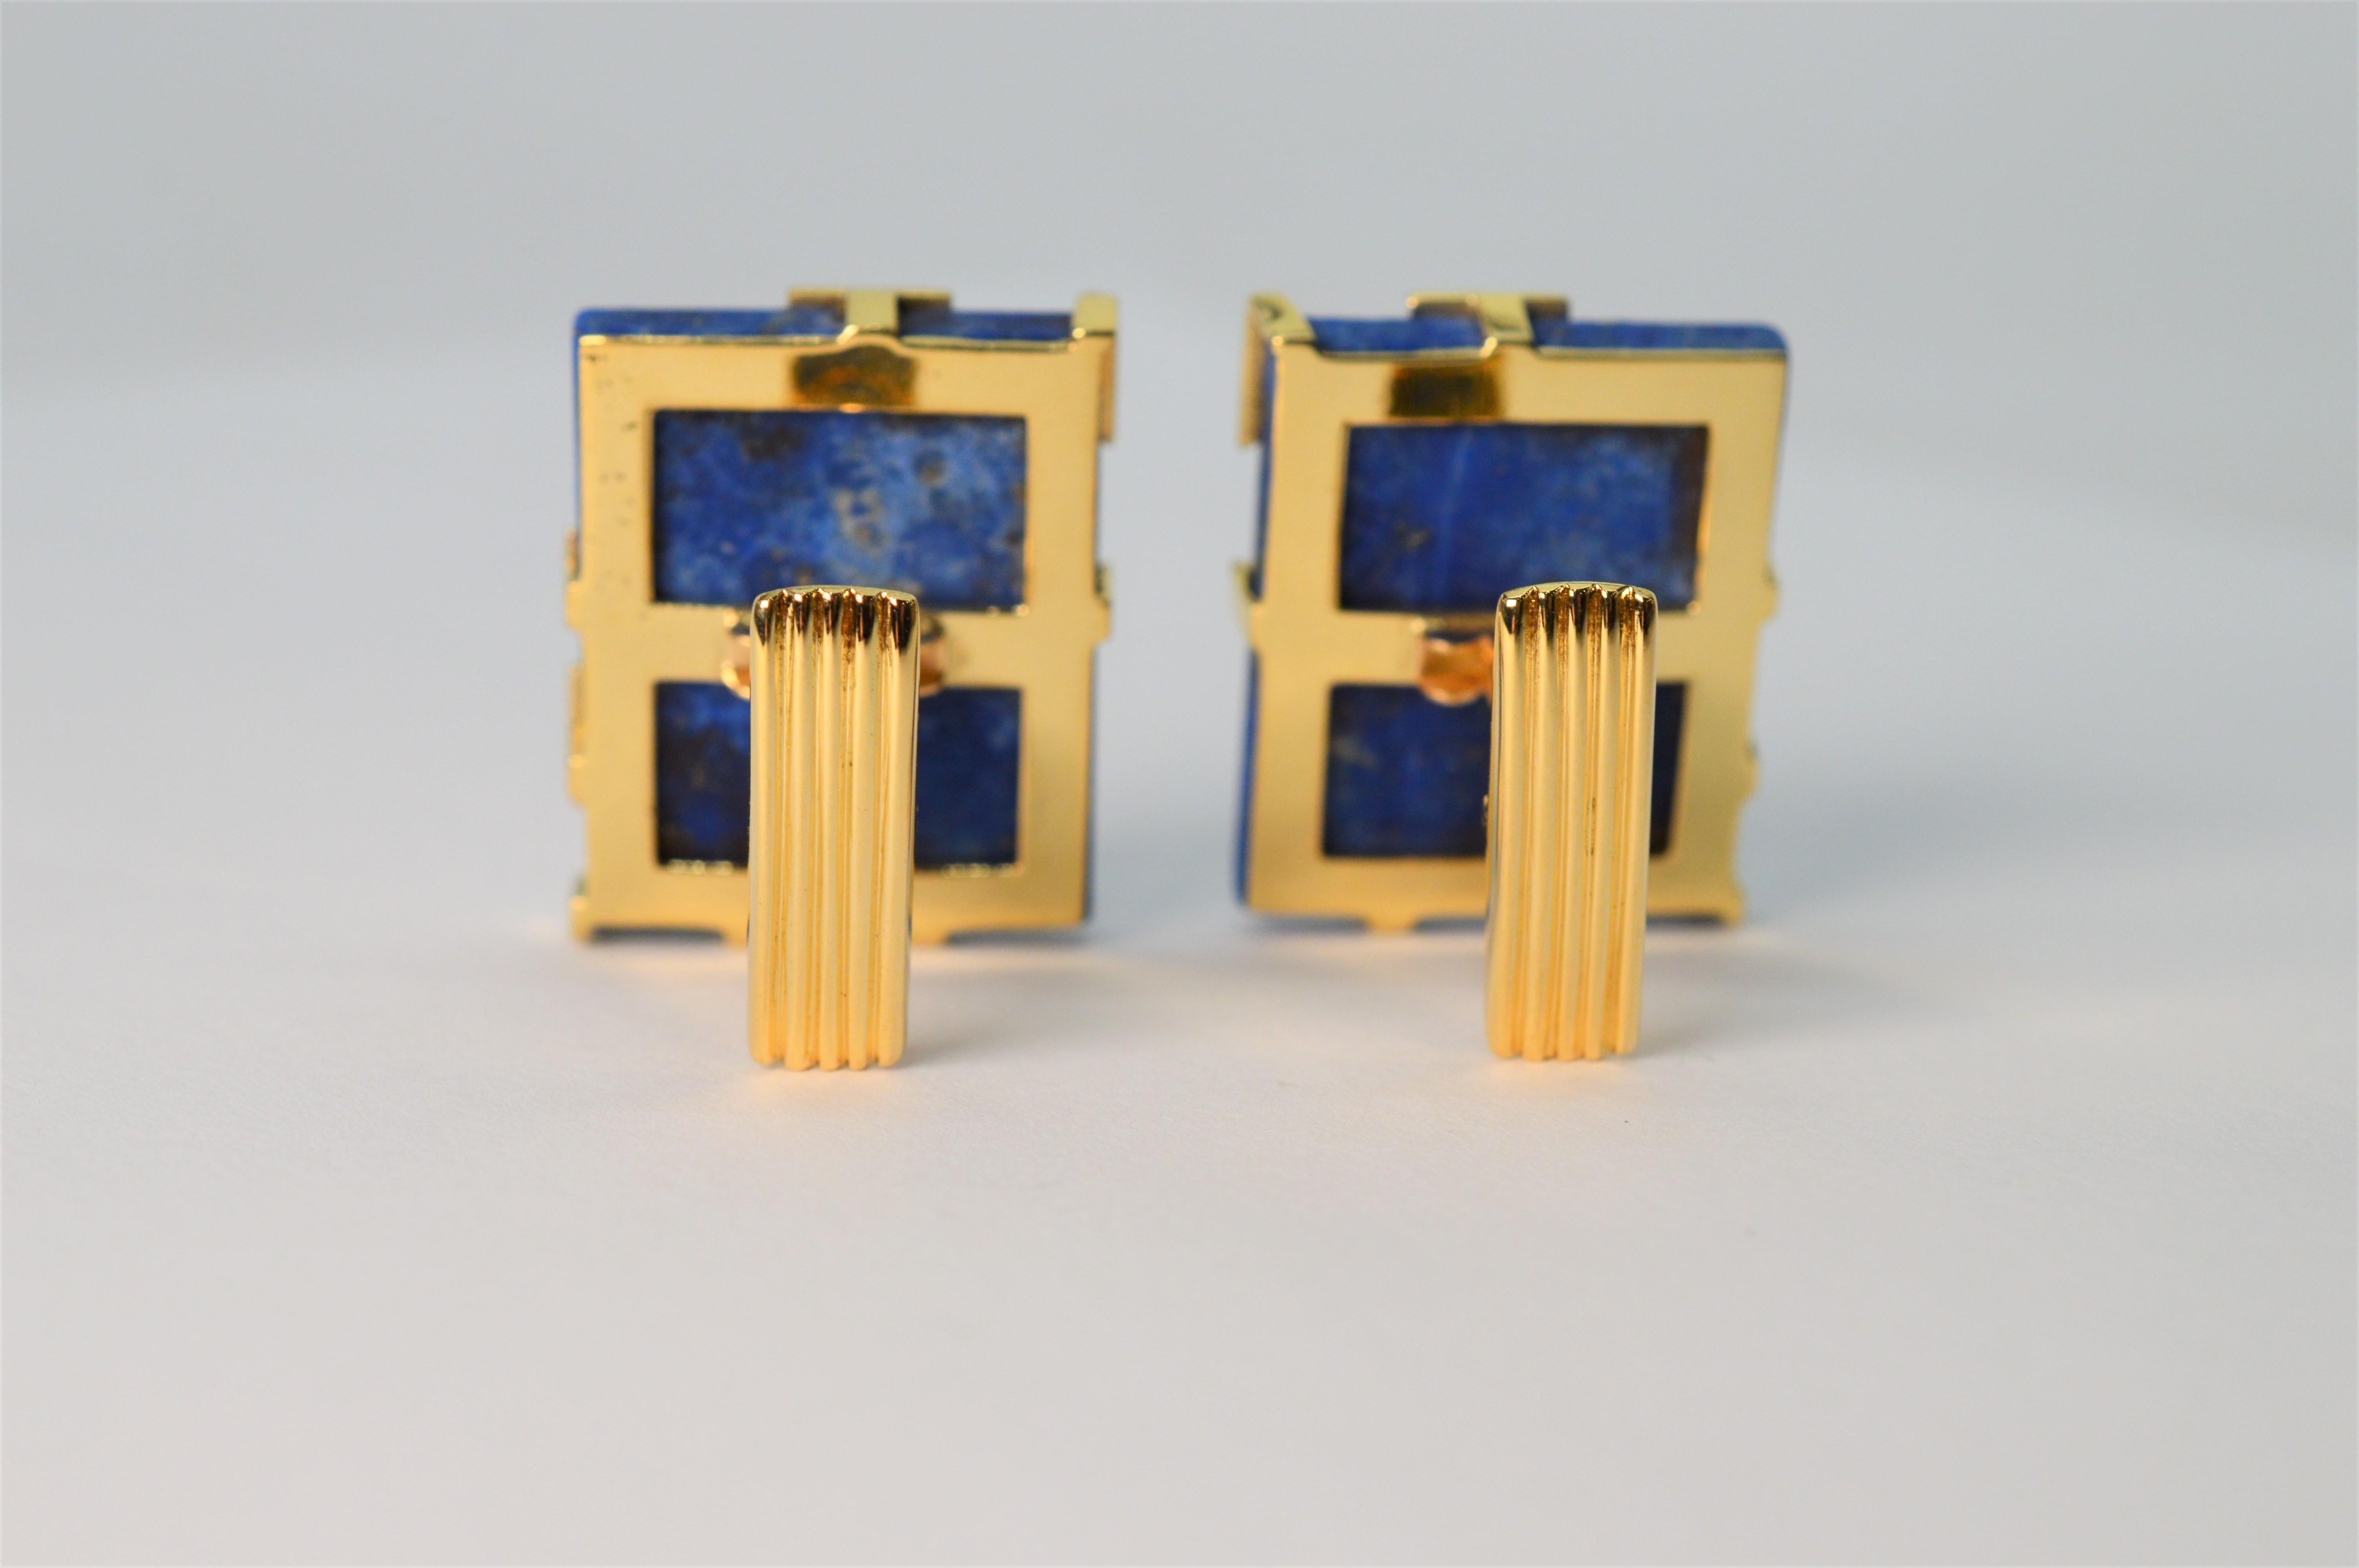 Des carreaux de pierre lapis-lazuli d'un bleu vif, rehaussés d'or jaune 18 carats, créent cette paire moderniste de boutons de manchette unisexes. Avec un motif circulaire astucieux, l'or recouvre partiellement la pierre bleue, laissant la couleur